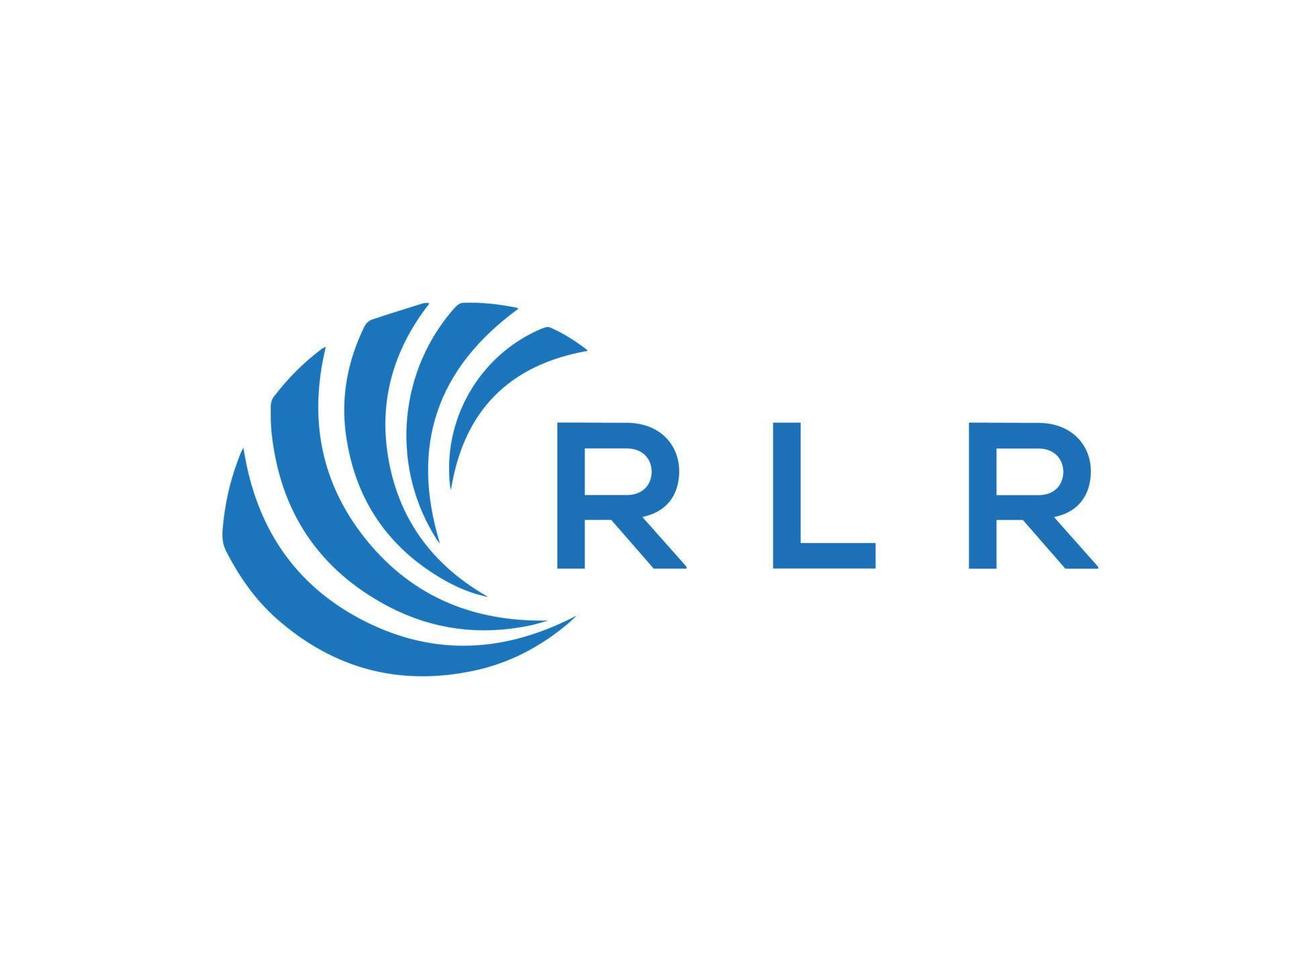 RLR letter logo design on white background. RLR creative circle letter logo concept. RLR letter design. vector